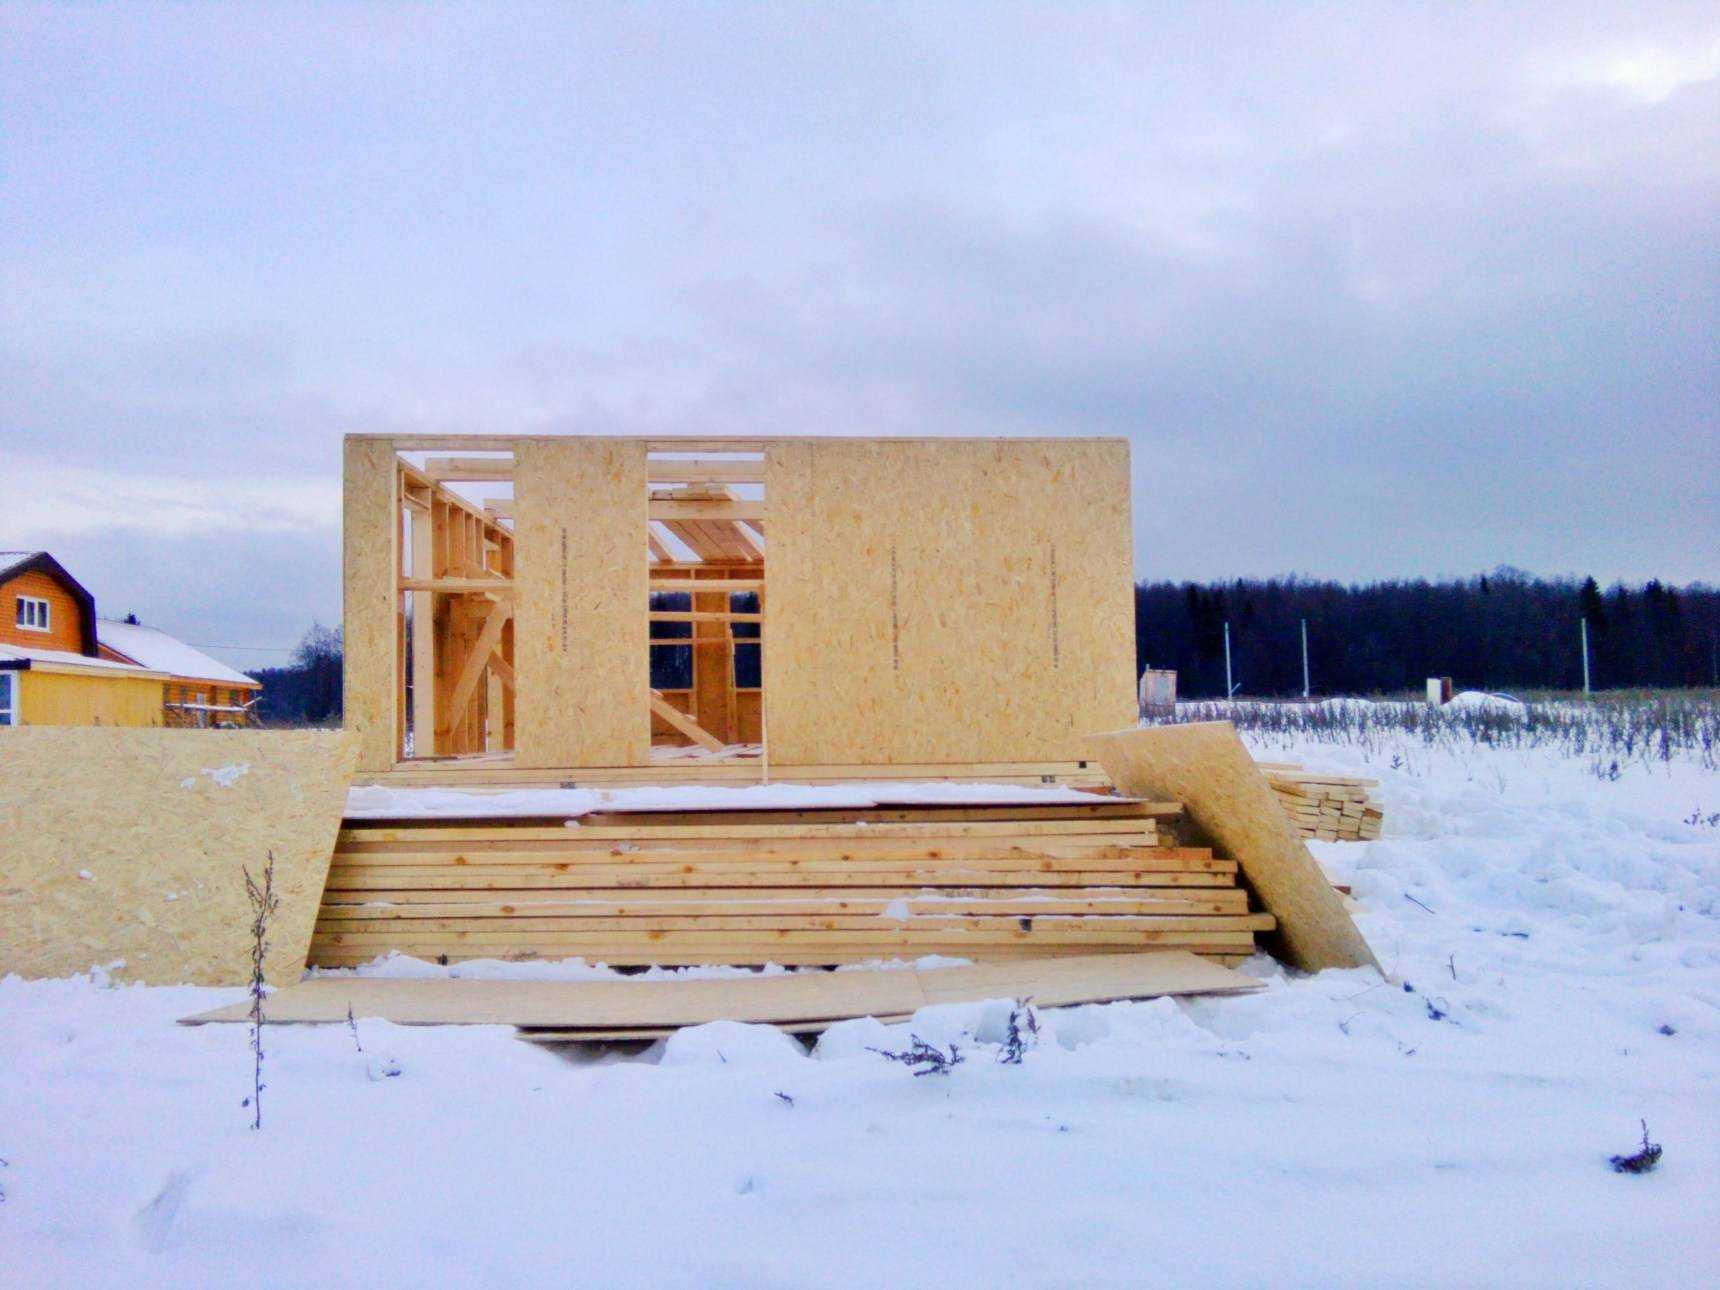 Правильное утепление каркасного дома для зимнего проживания изнутри и снаружи, можно ли утеплять каркасный дом зимой